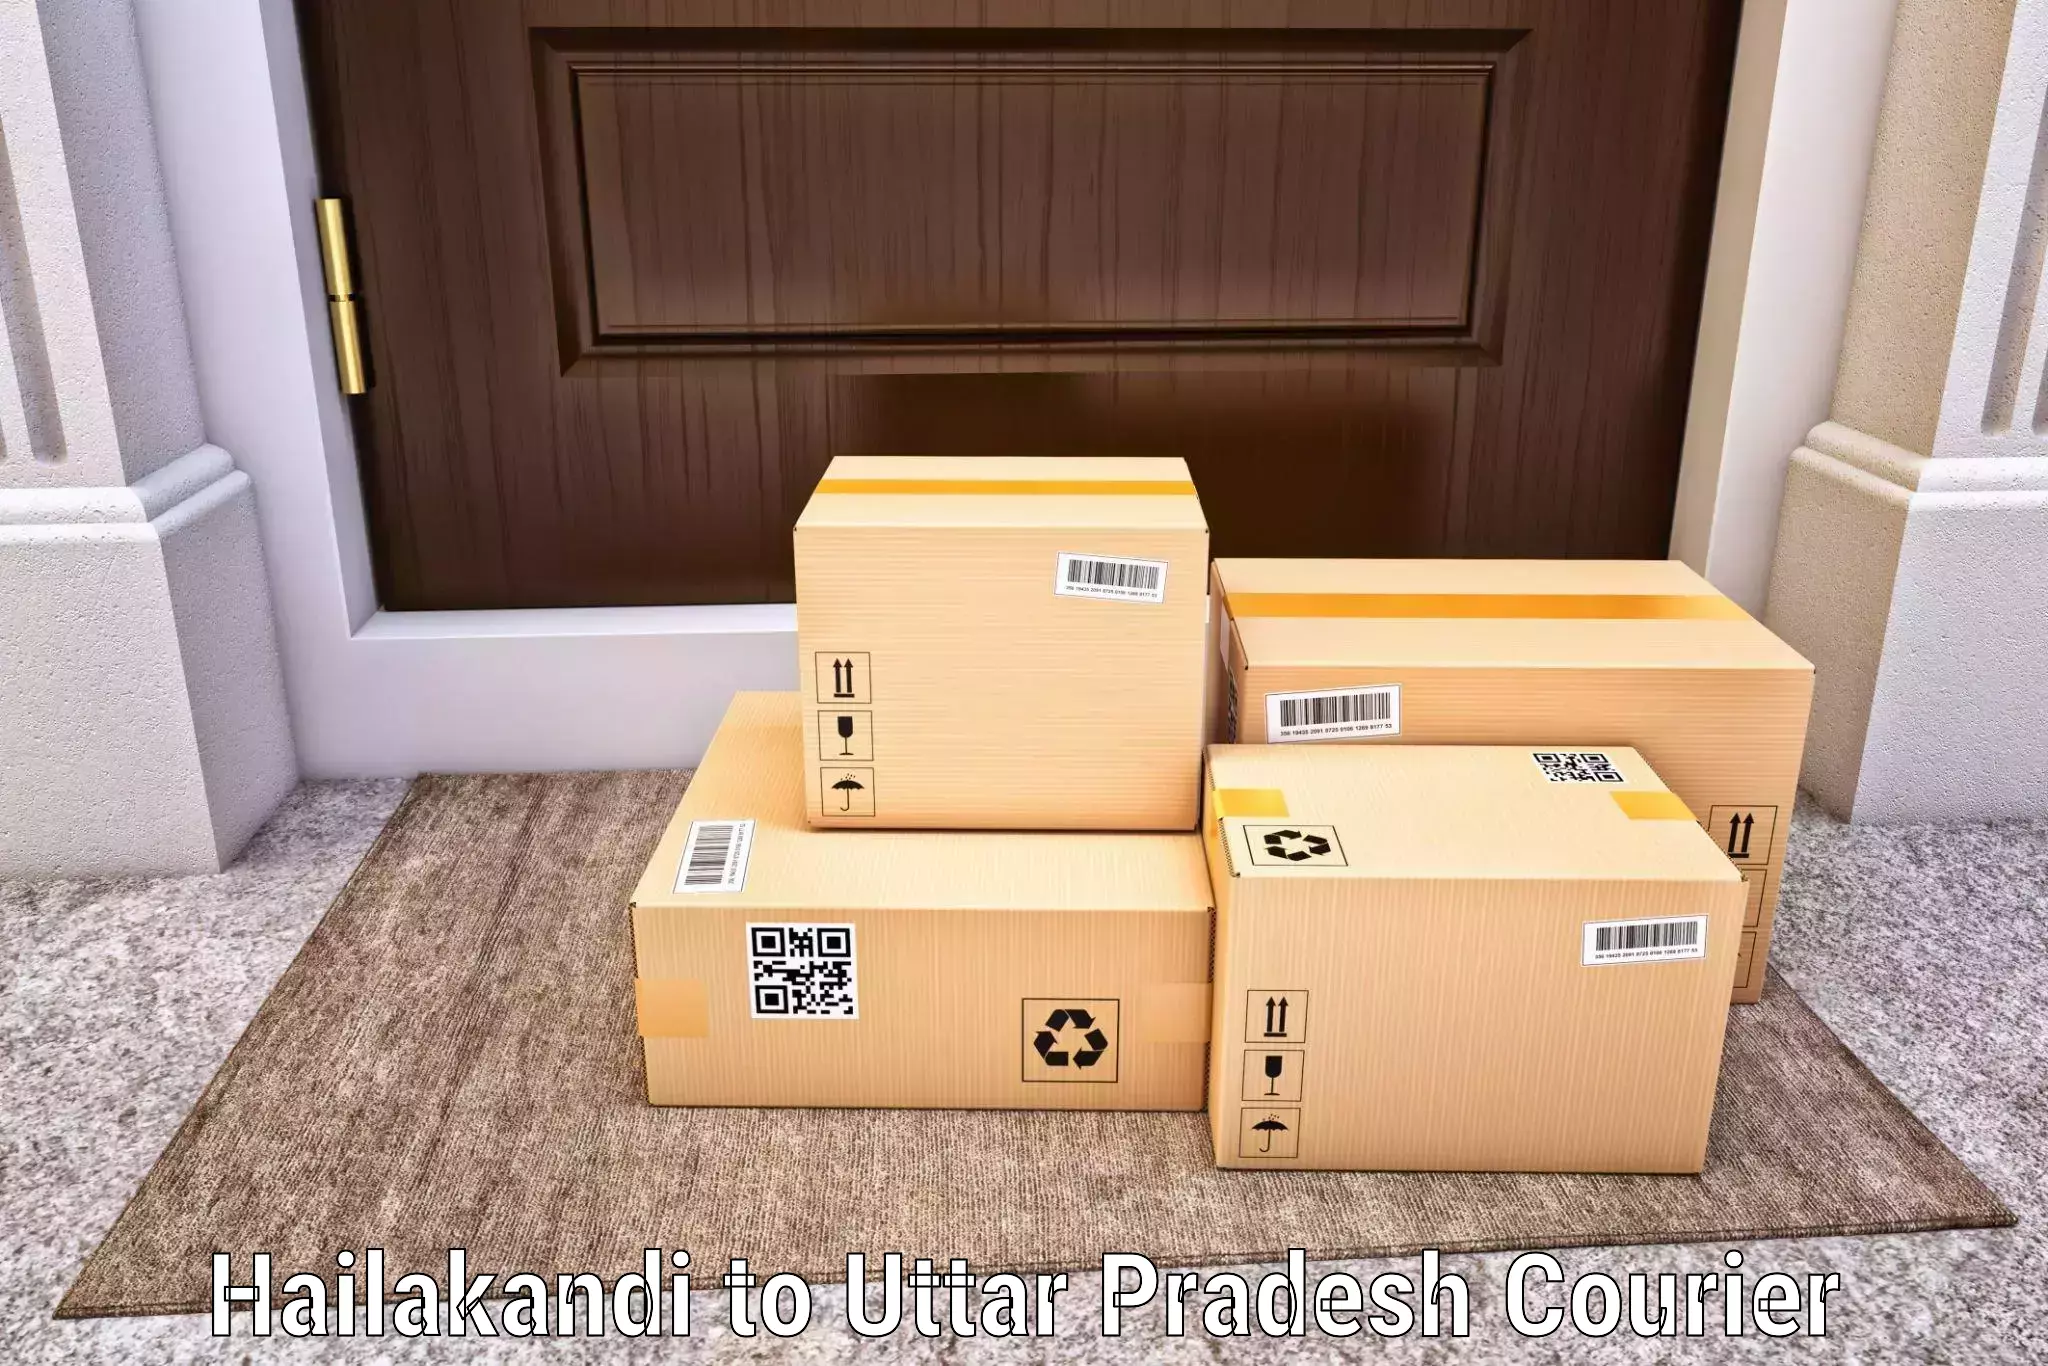 Local delivery service Hailakandi to Mohanlalganj